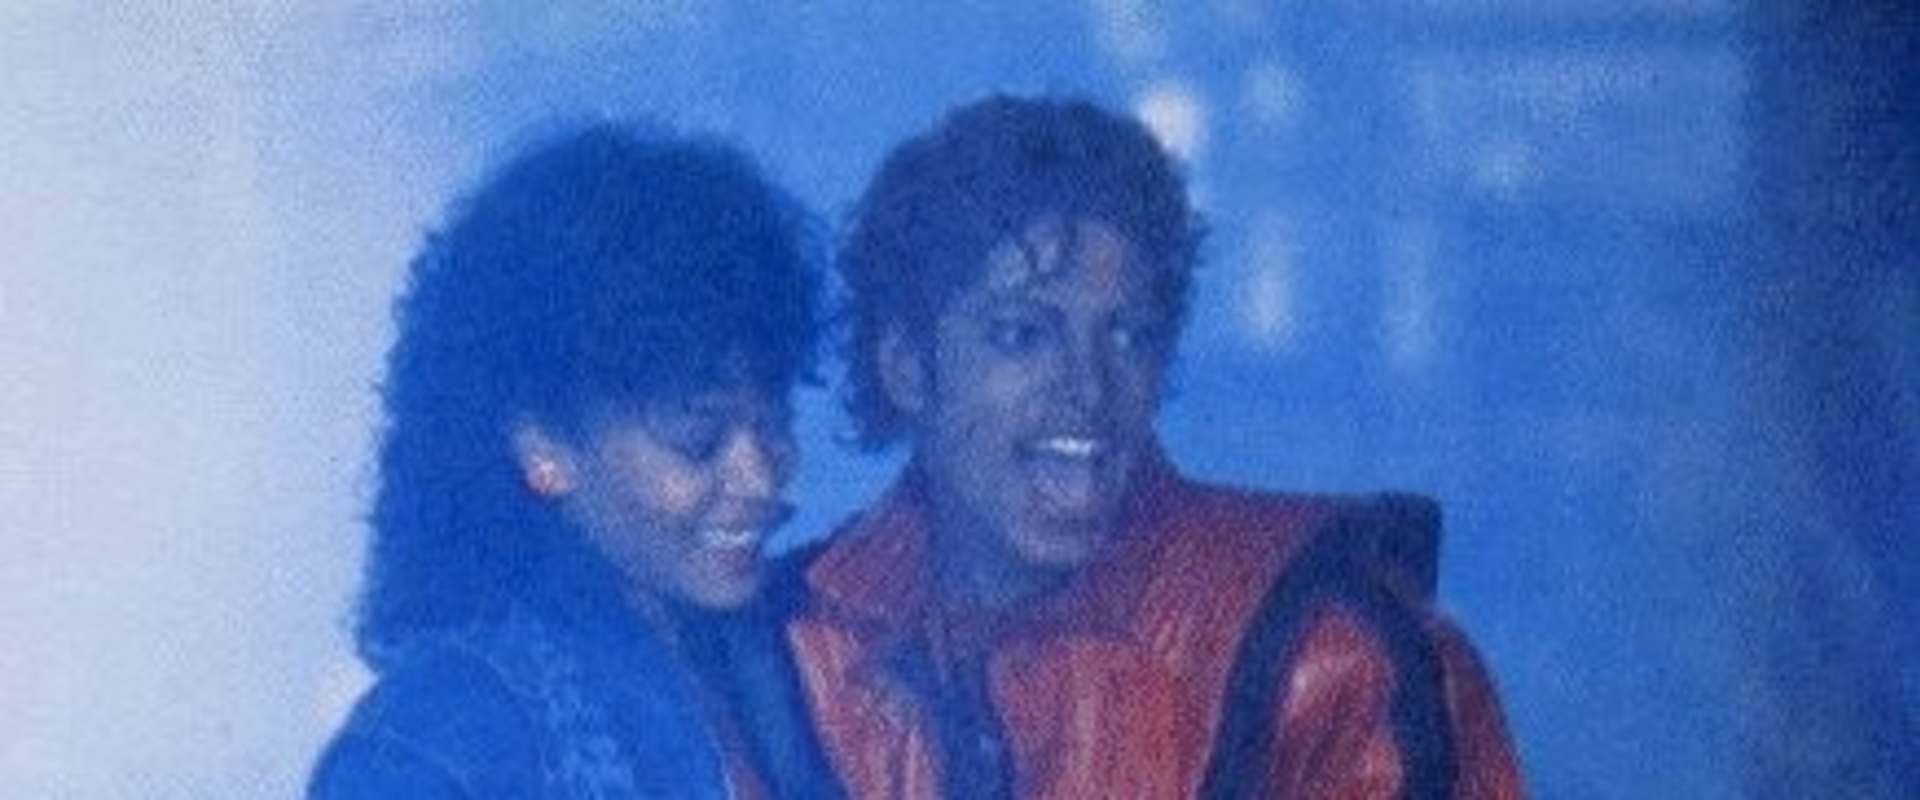 Michael Jackson's Thriller background 1